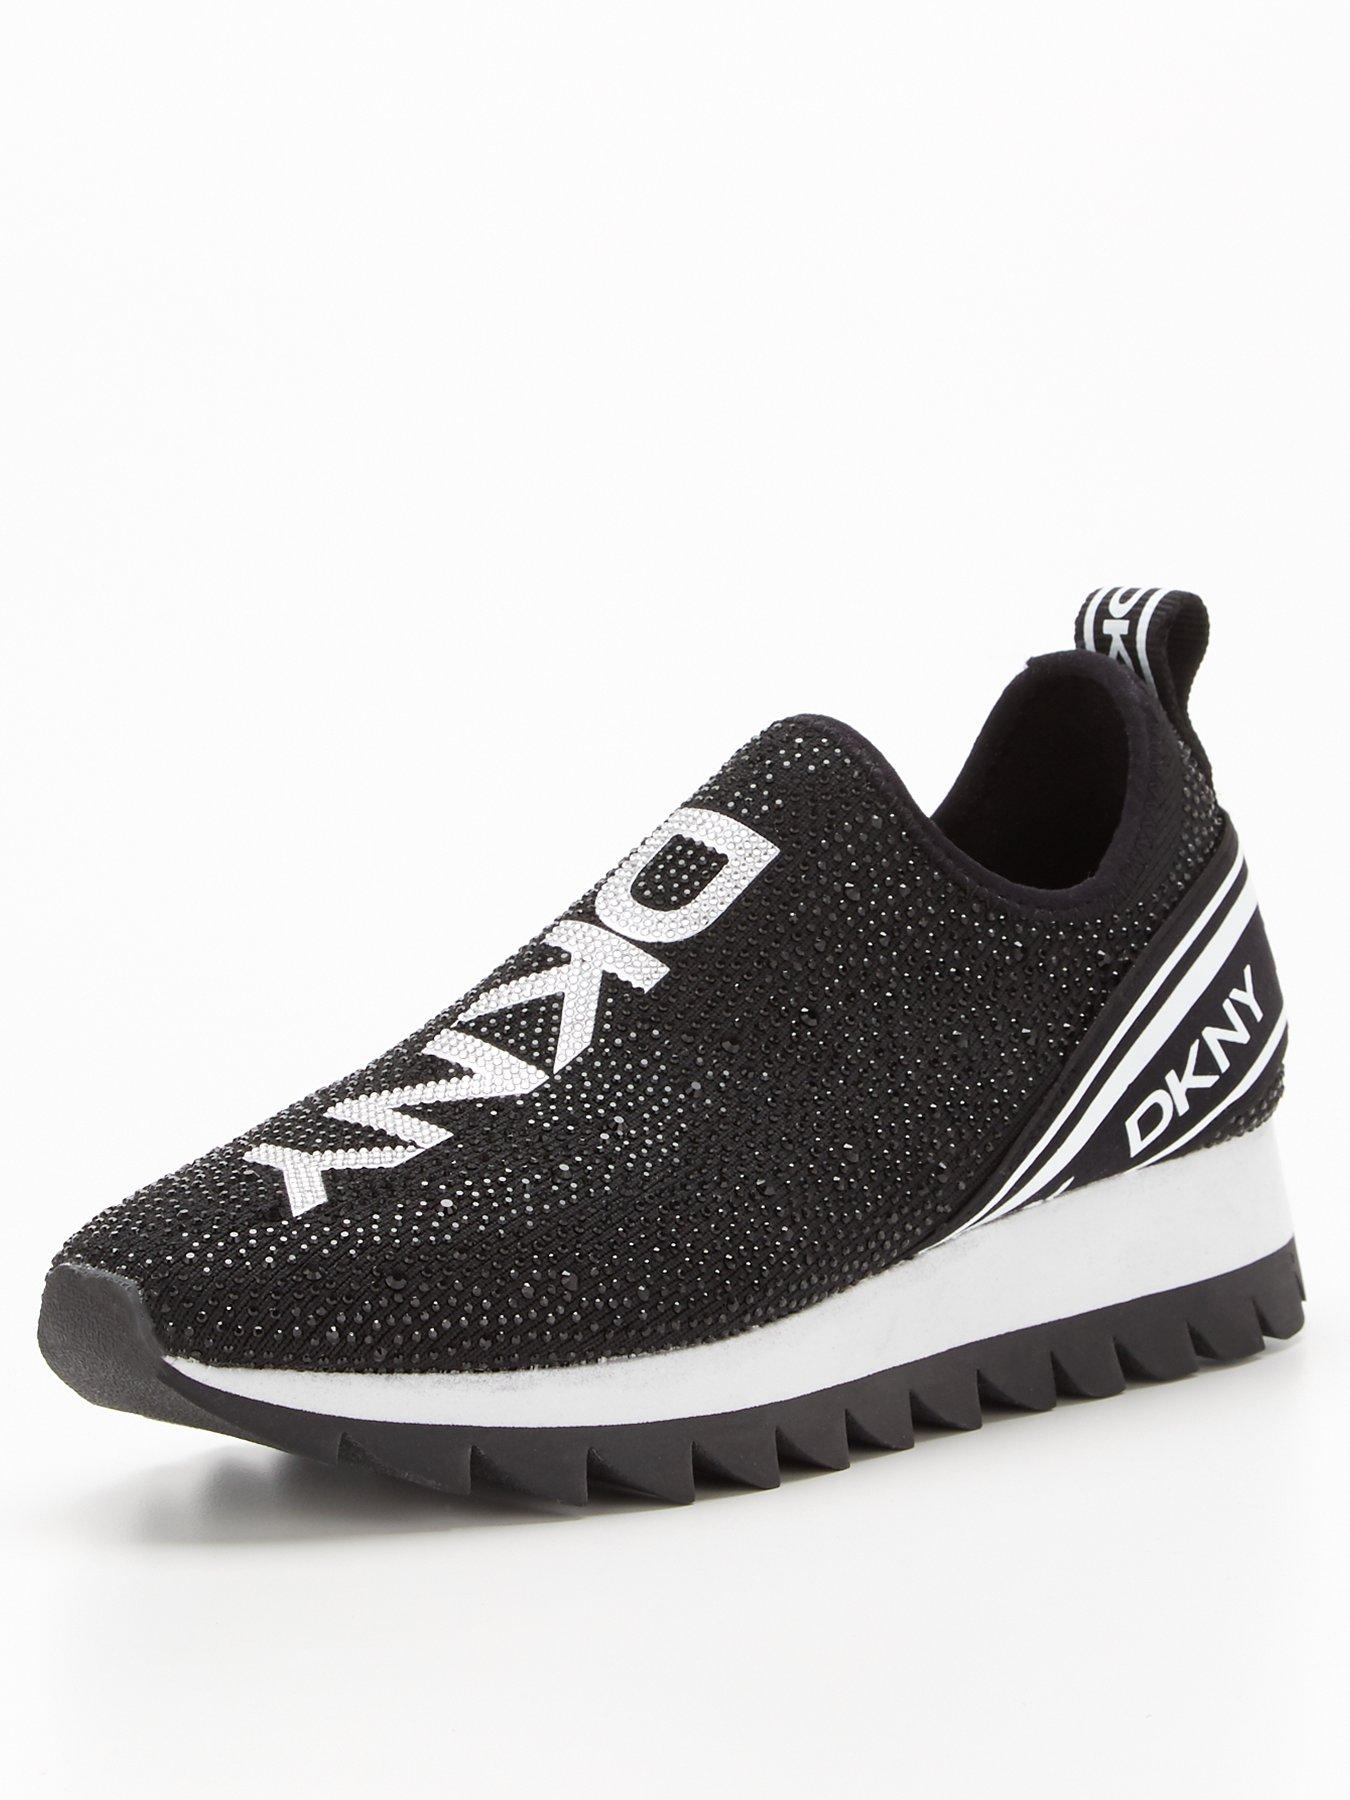 DKNY Abbi - Slip On Runner Sneaker - Black/white | very.co.uk